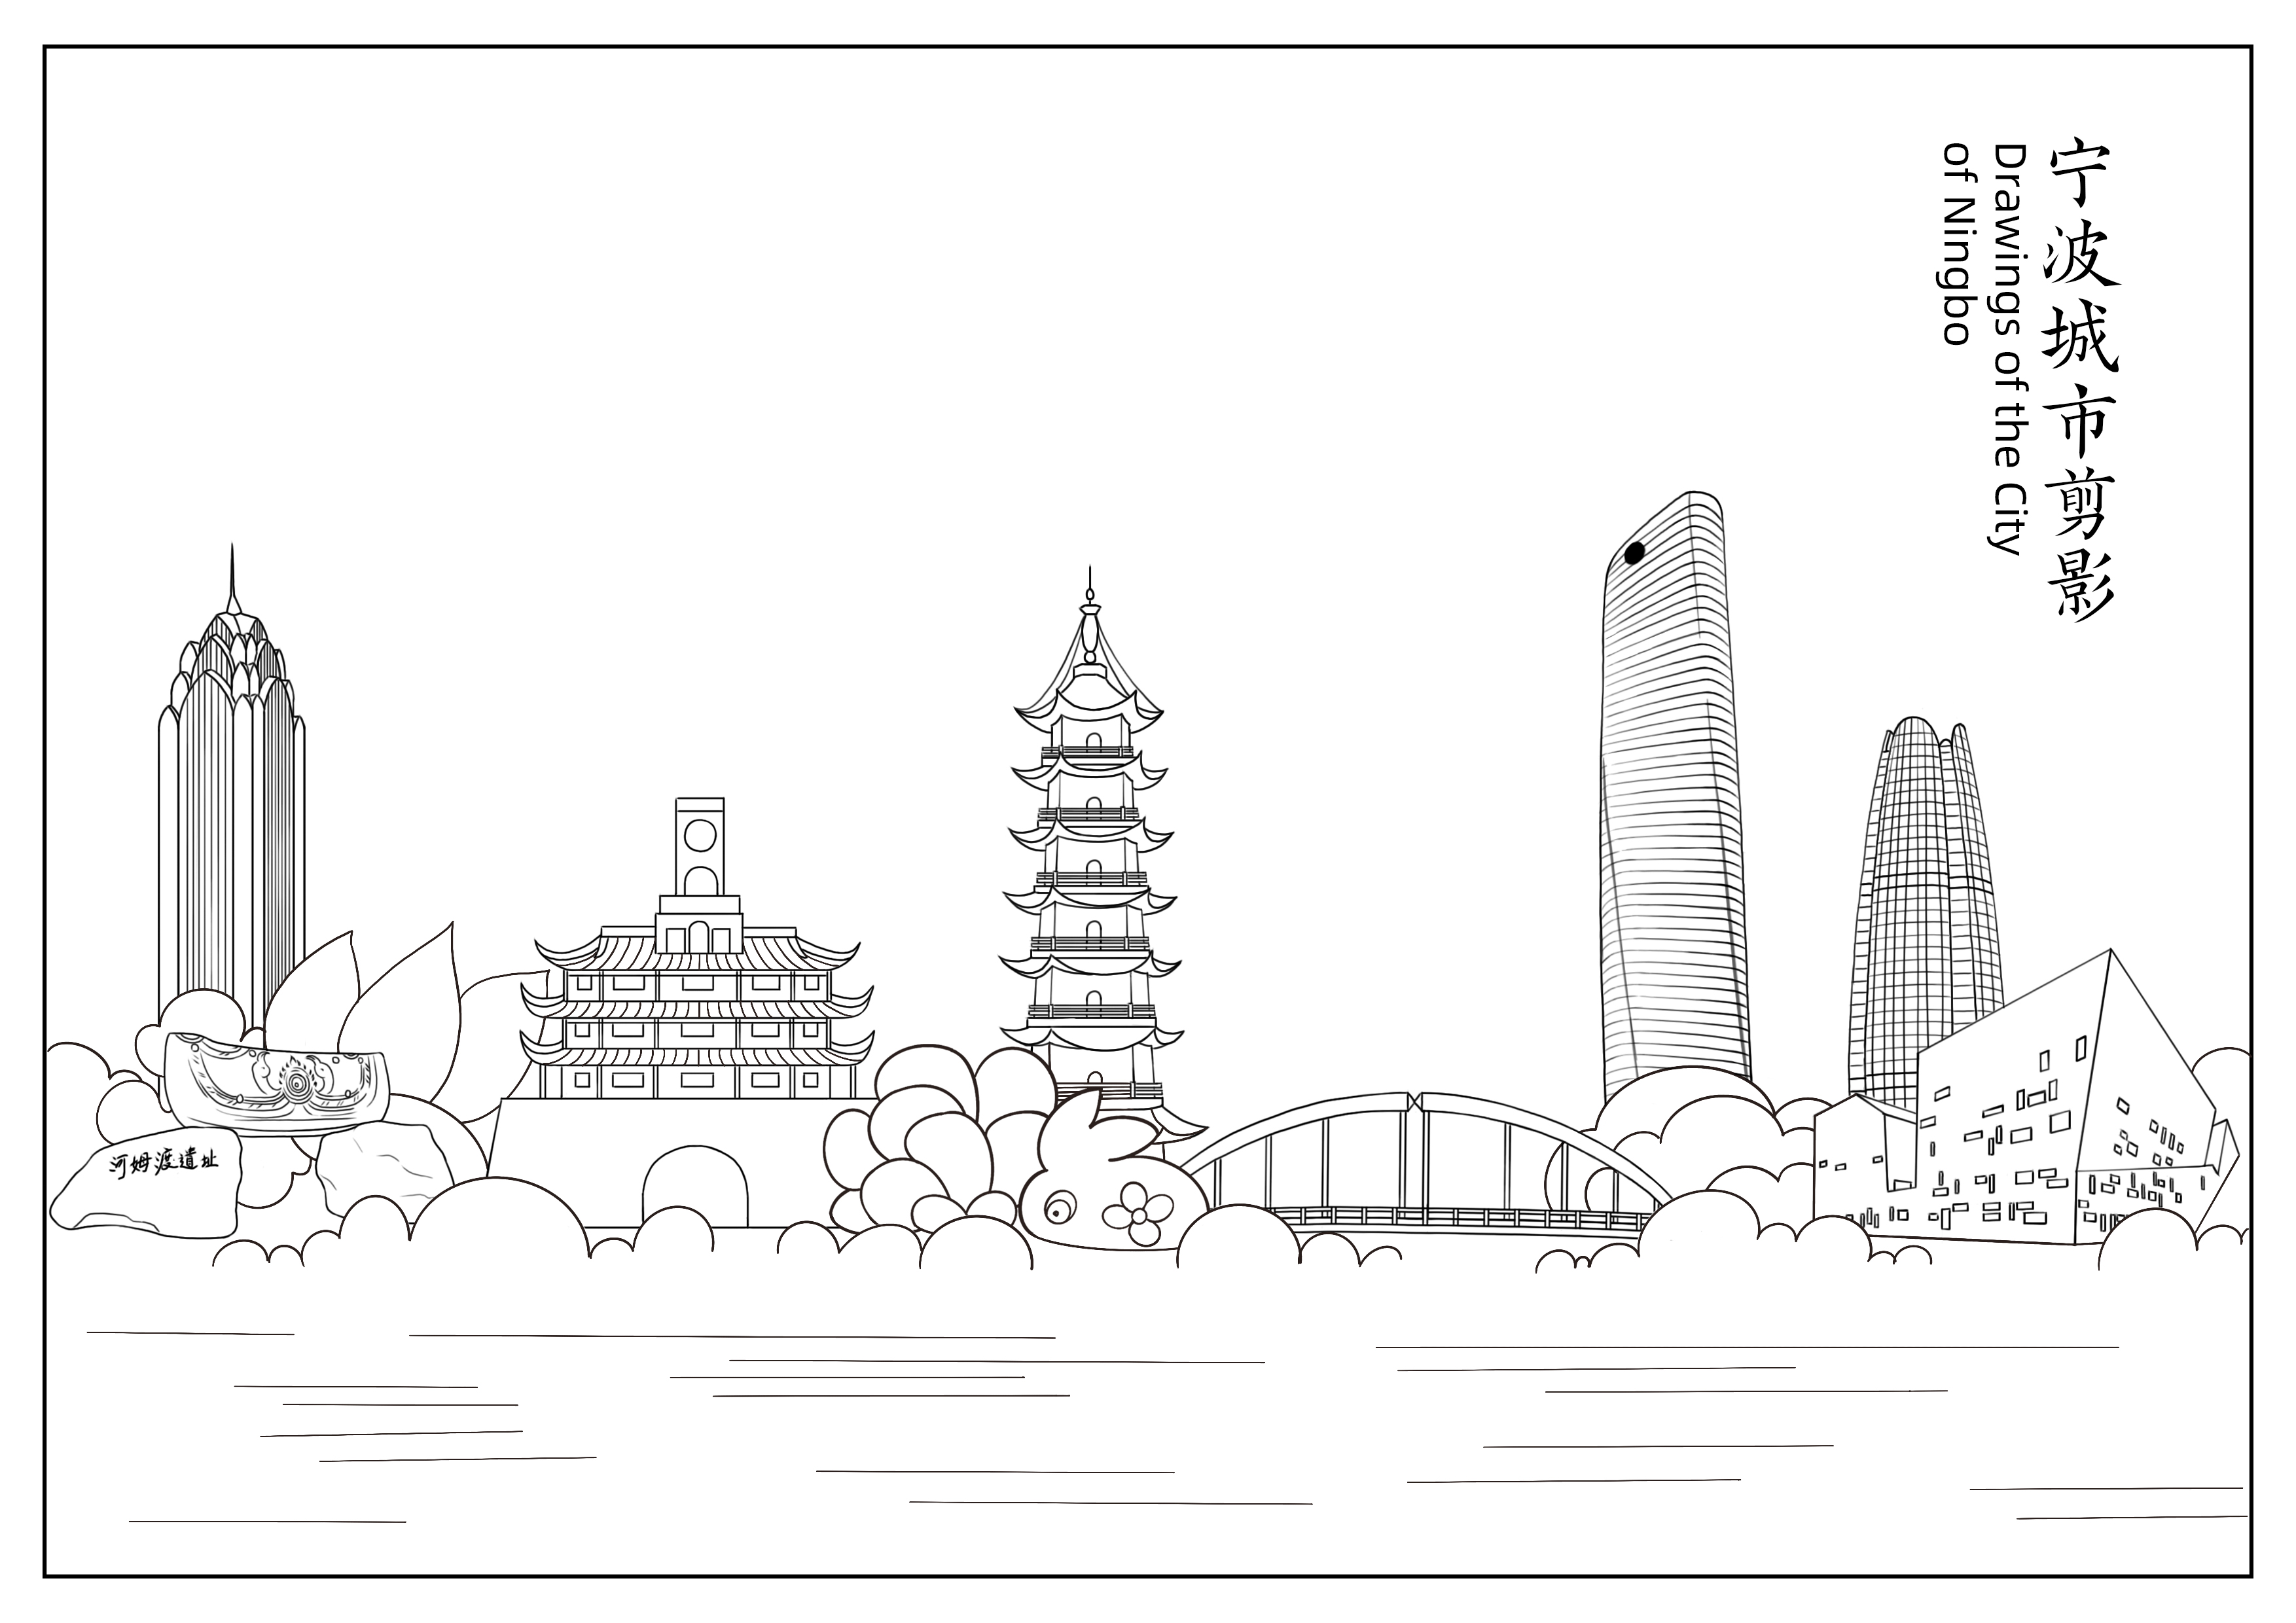 宁波为你留白迎新春城市线描填色活动全球征集